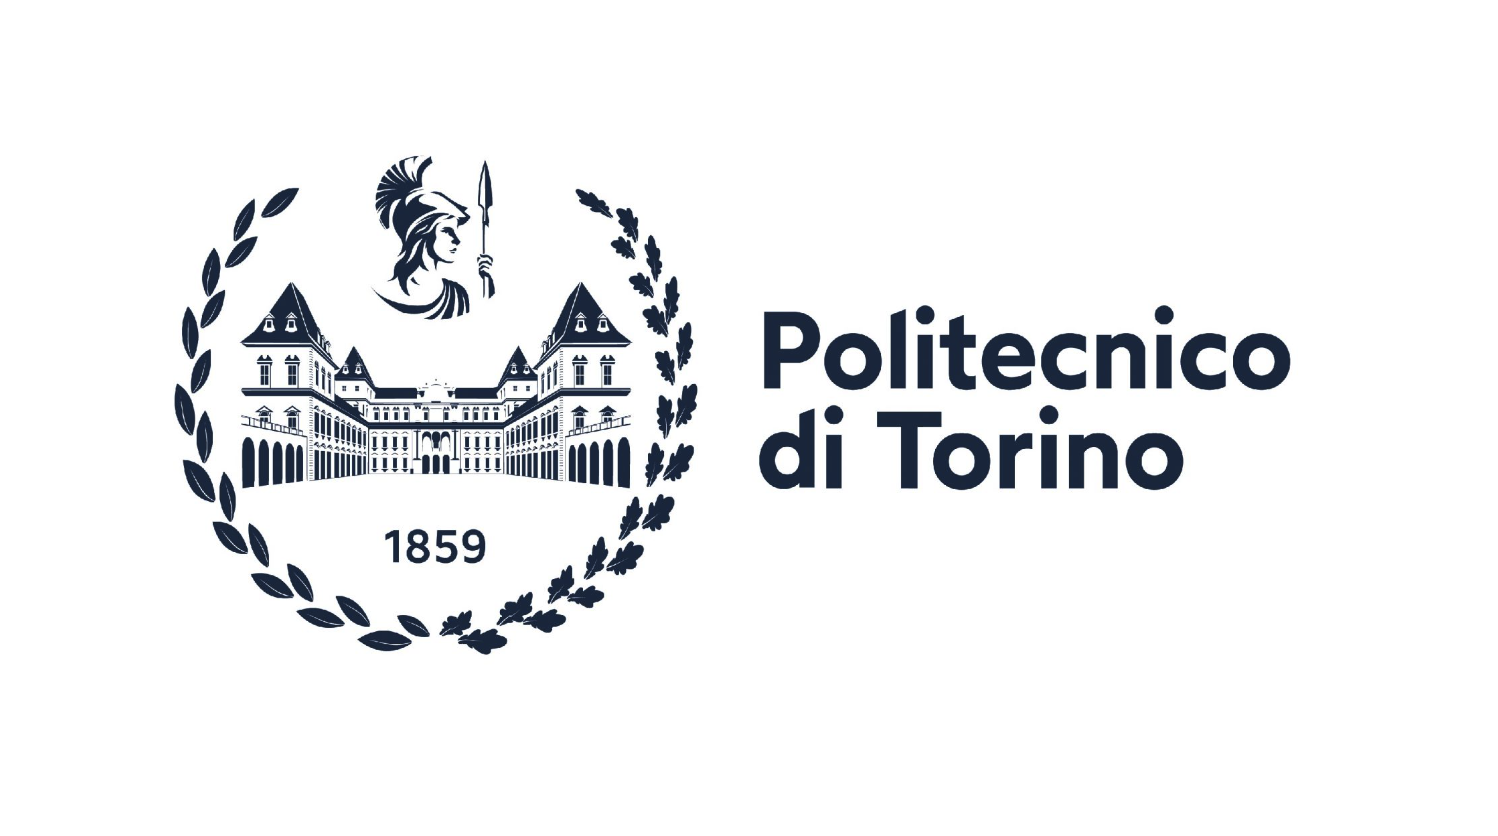 images/immagini/immagini_news/Politecnico_di_Torino.png